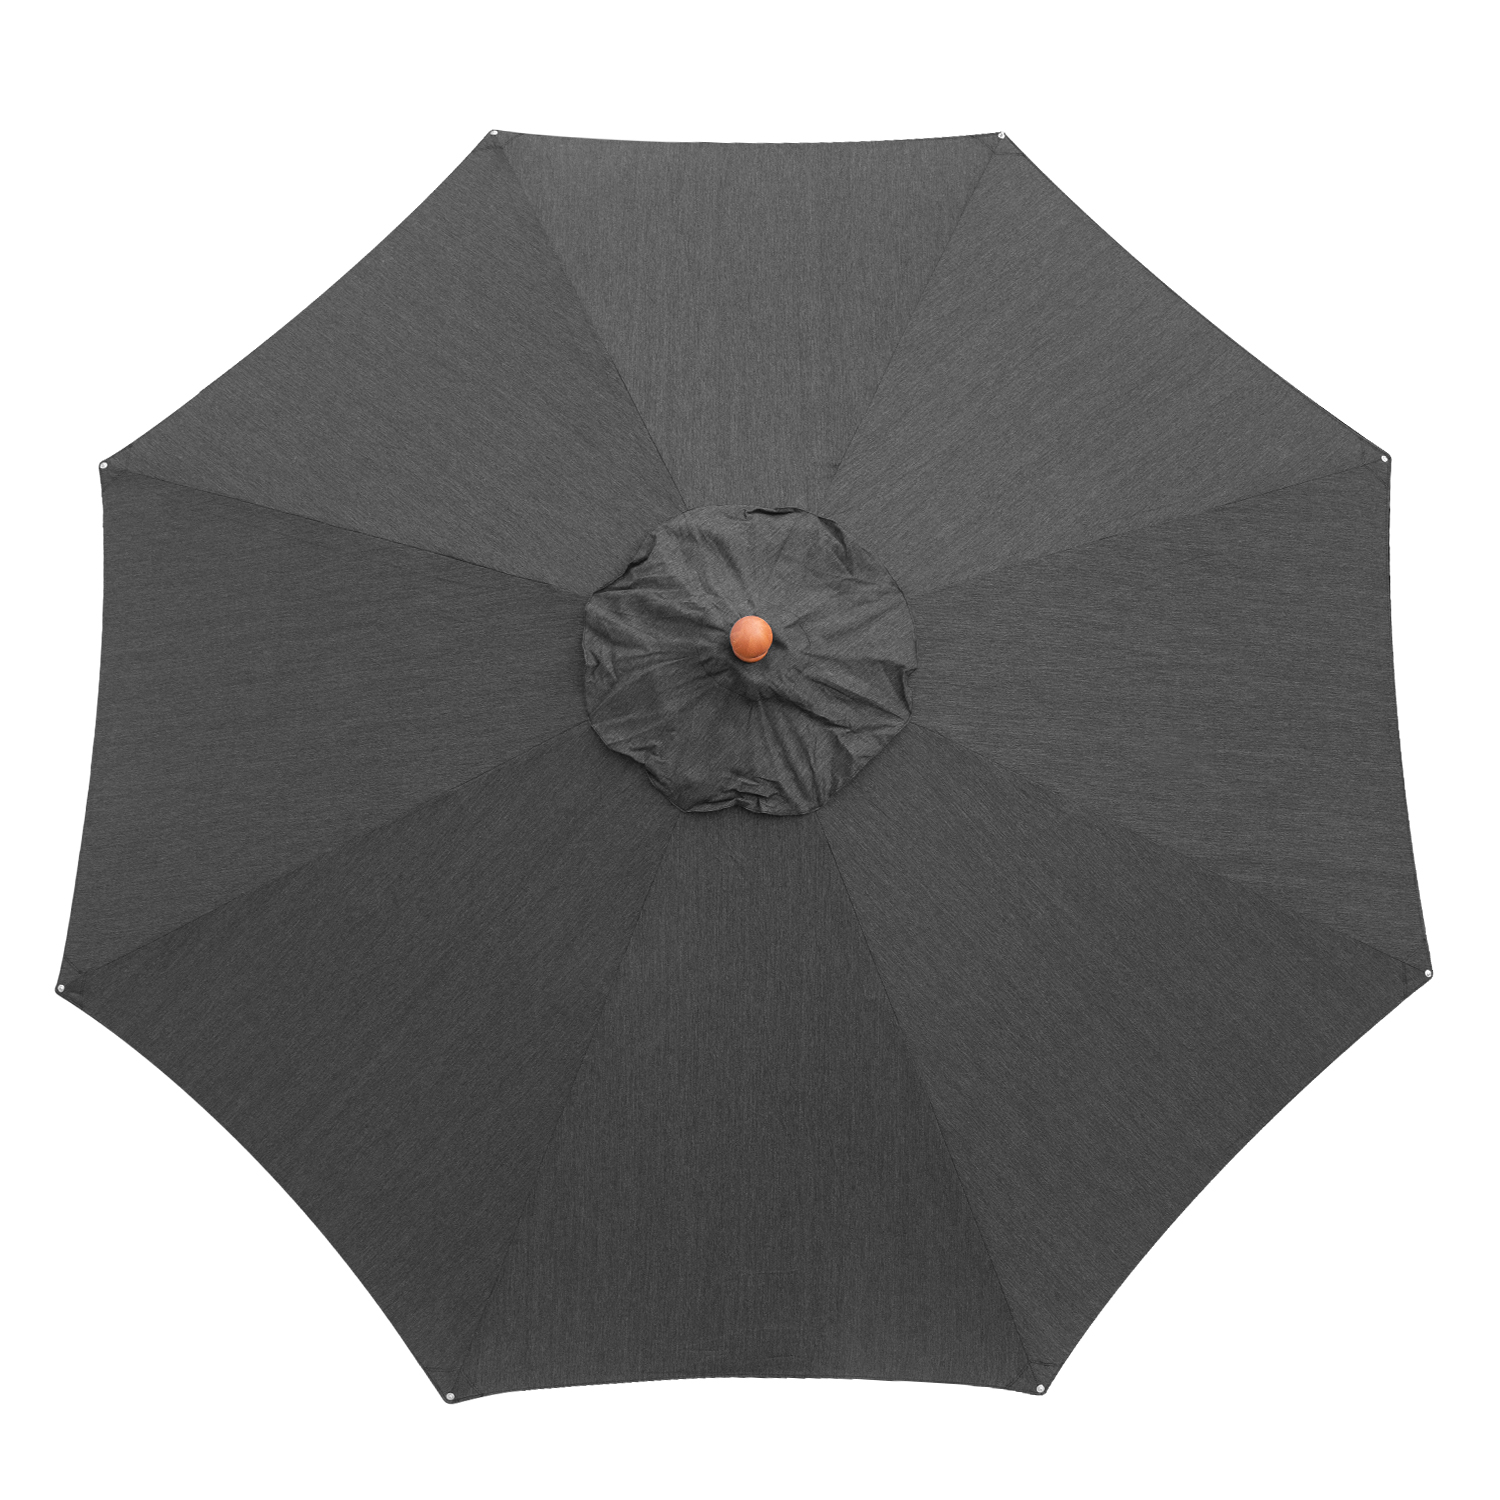 anndora Sonnenschirm 3,5m rund aus Olefin in anthrazit Winddach UV-Schutz - 4